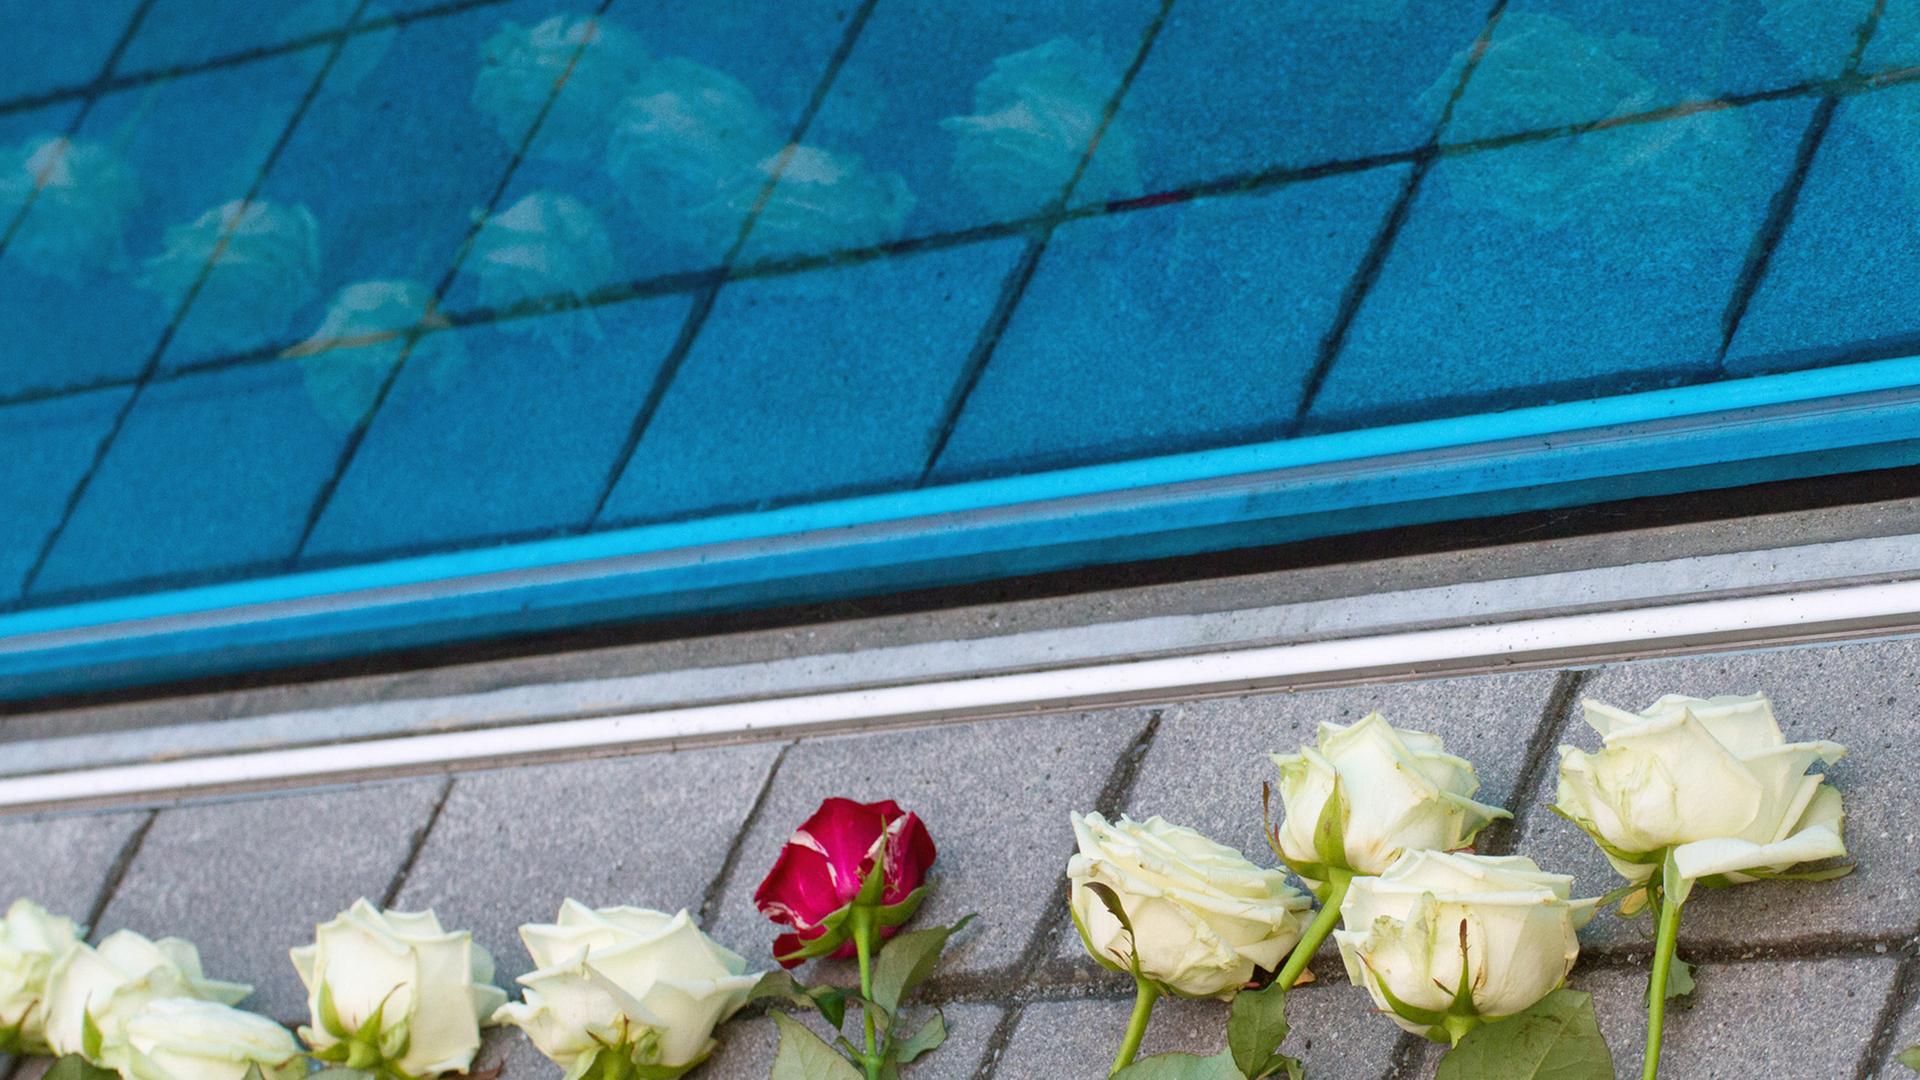 Rosen liegen an der blauen Glaswand des Mahnmals für die Opfer der nationalsozialistischen "Euthanasie-Morde". In der Berliner Tiergartenstraße Nr. 4 befand sich ab April 1940 die Zentrale der Organisation, die den Massenmord an Patienten aus Heil- und Pflegeanstalten koordinierte und durchführte.